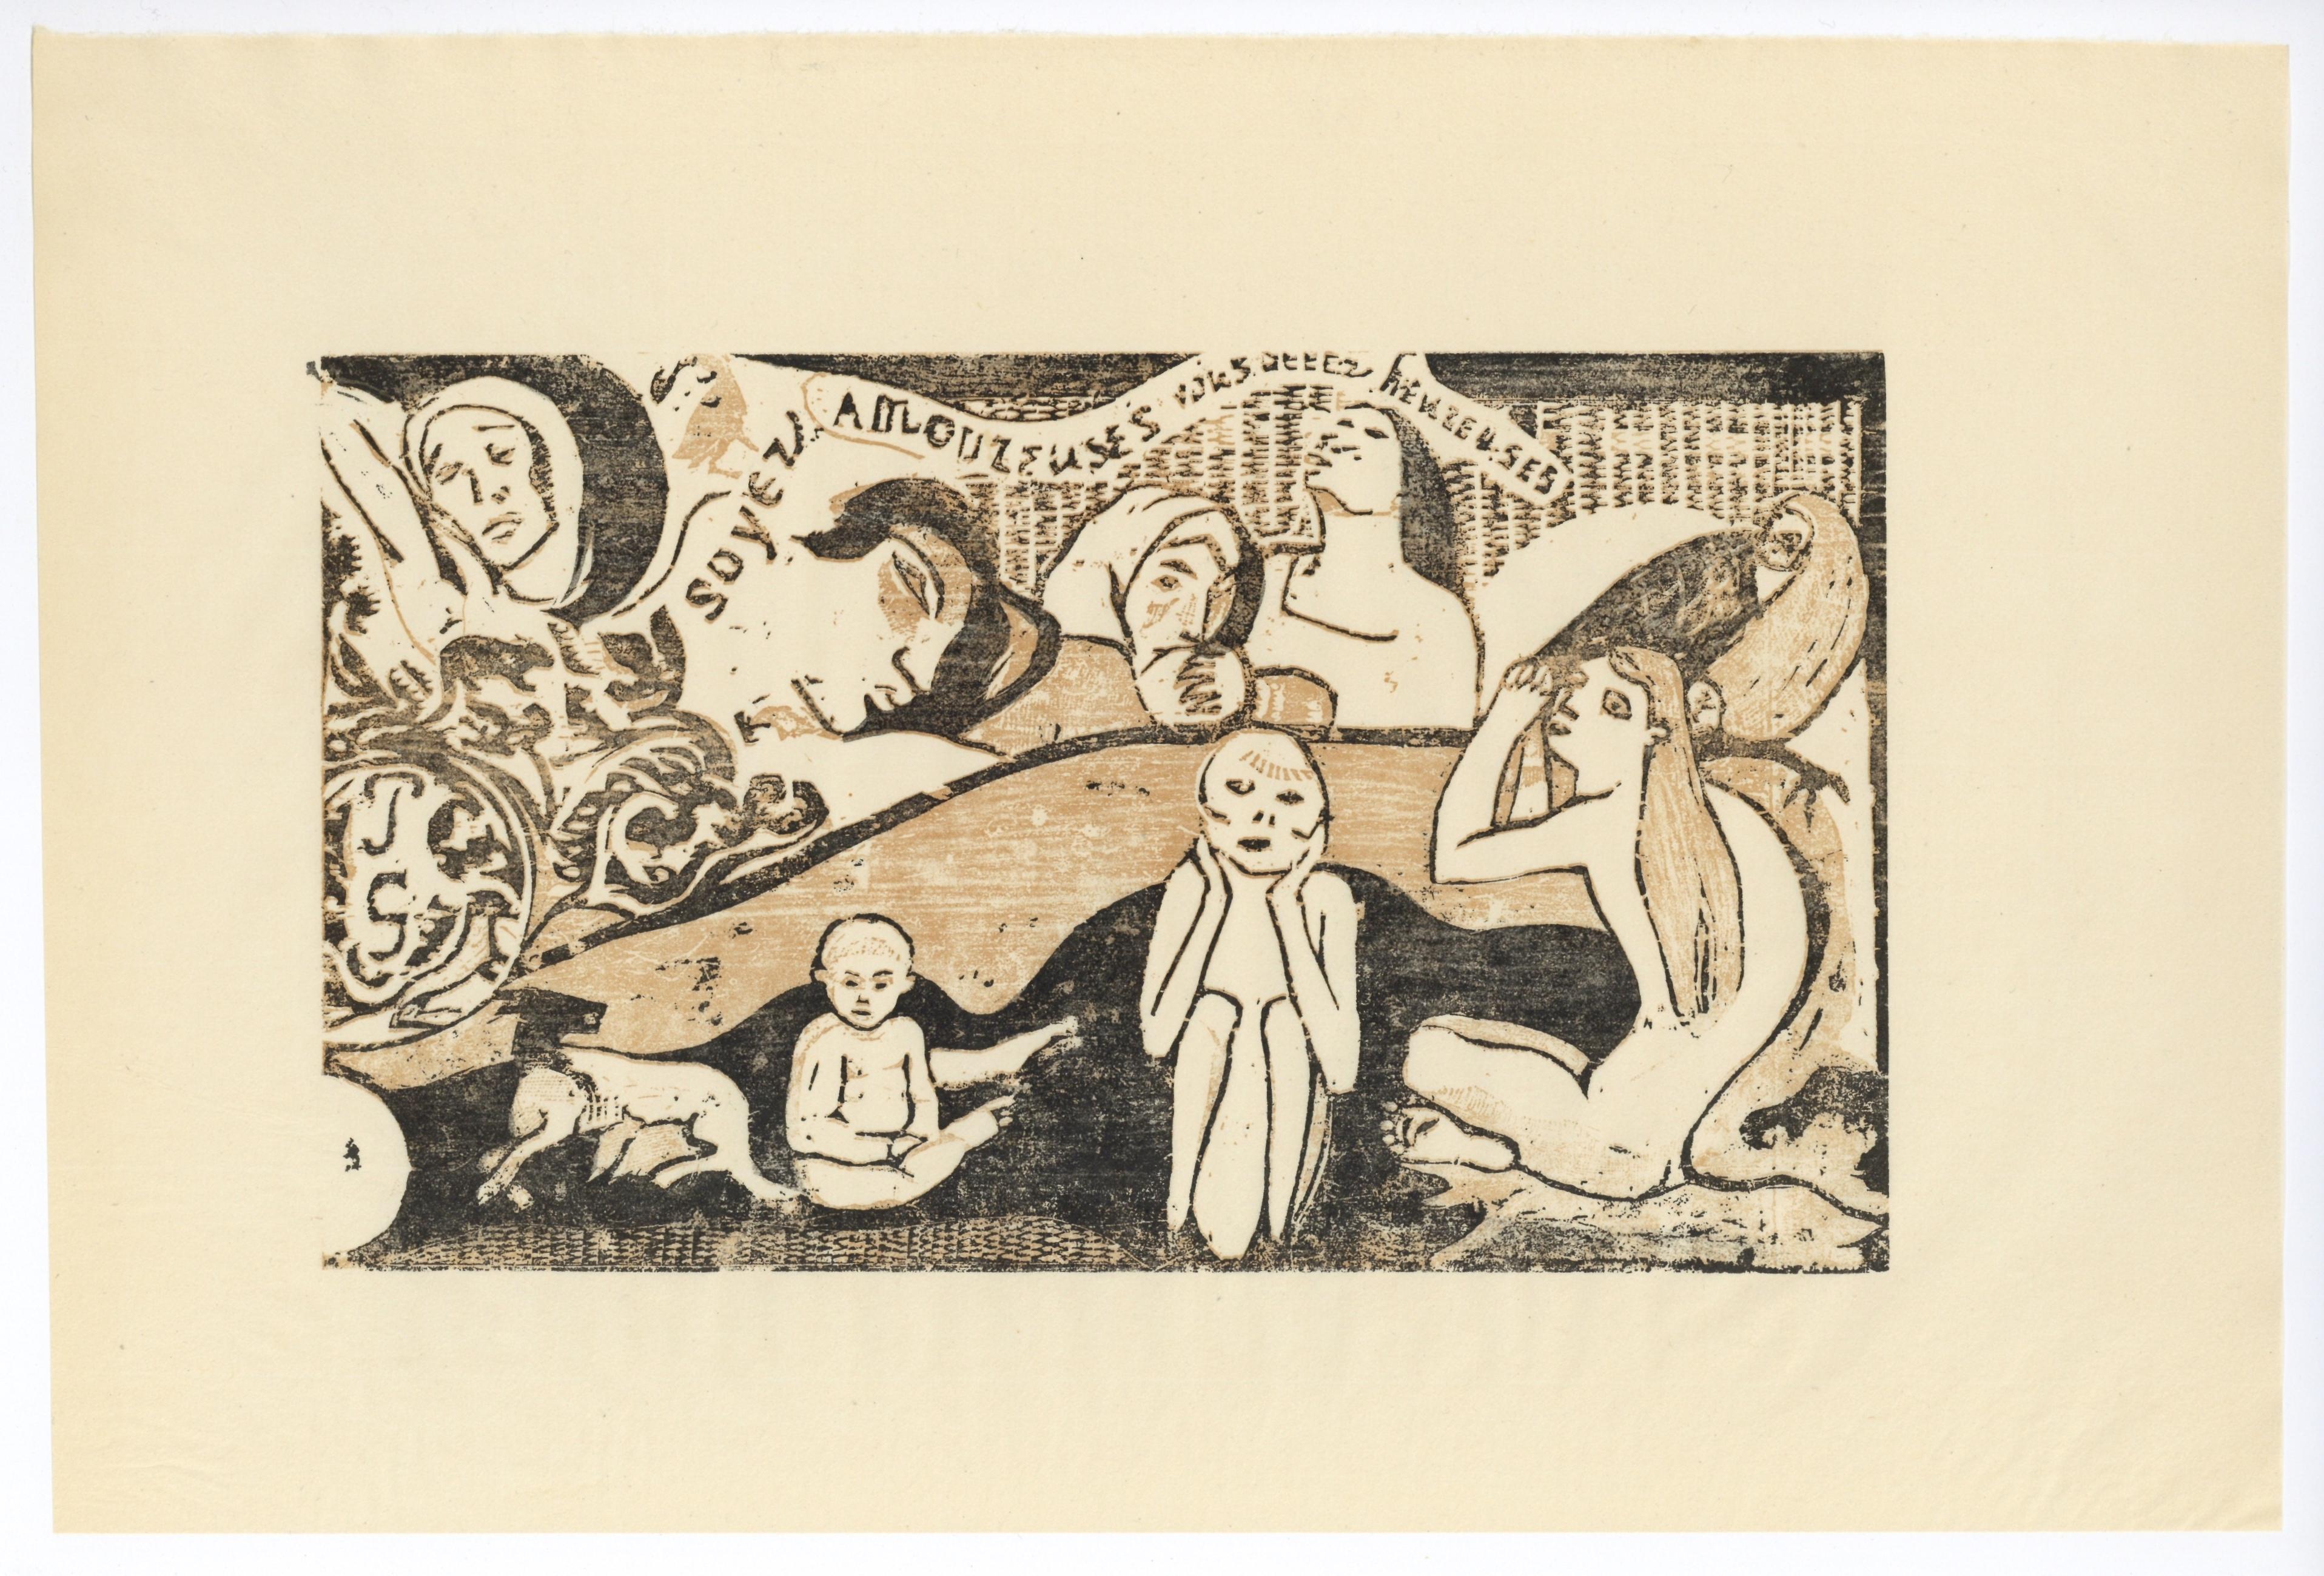 Soyez amoureuses, vous serez heureuses - Print by (after) Paul Gauguin